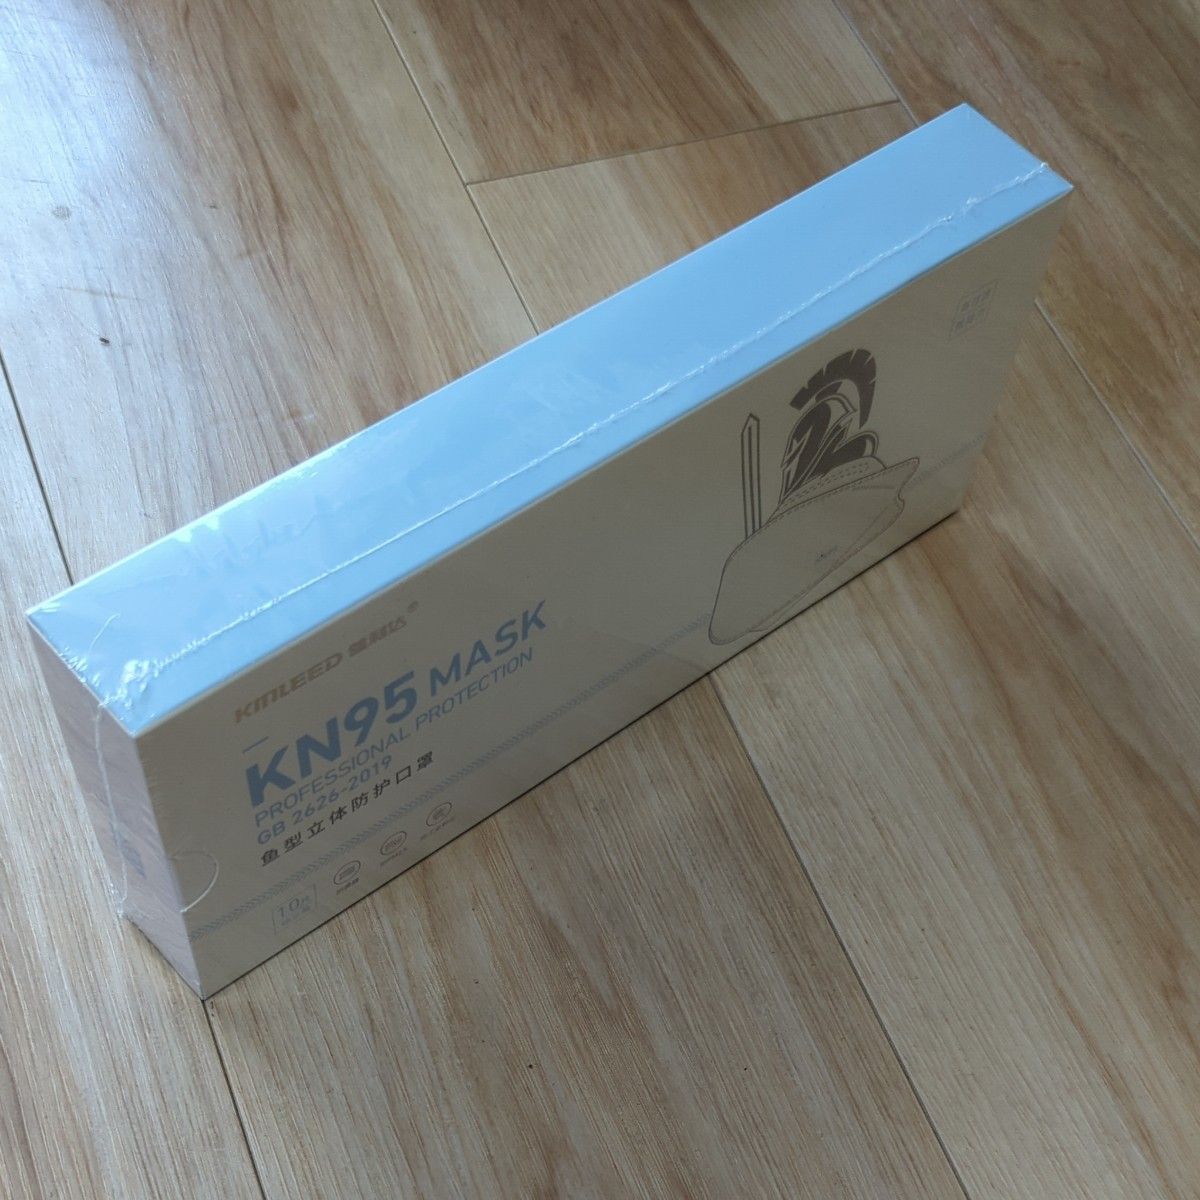 マスク　KN95  9箱（10枚入り）花粉症にも